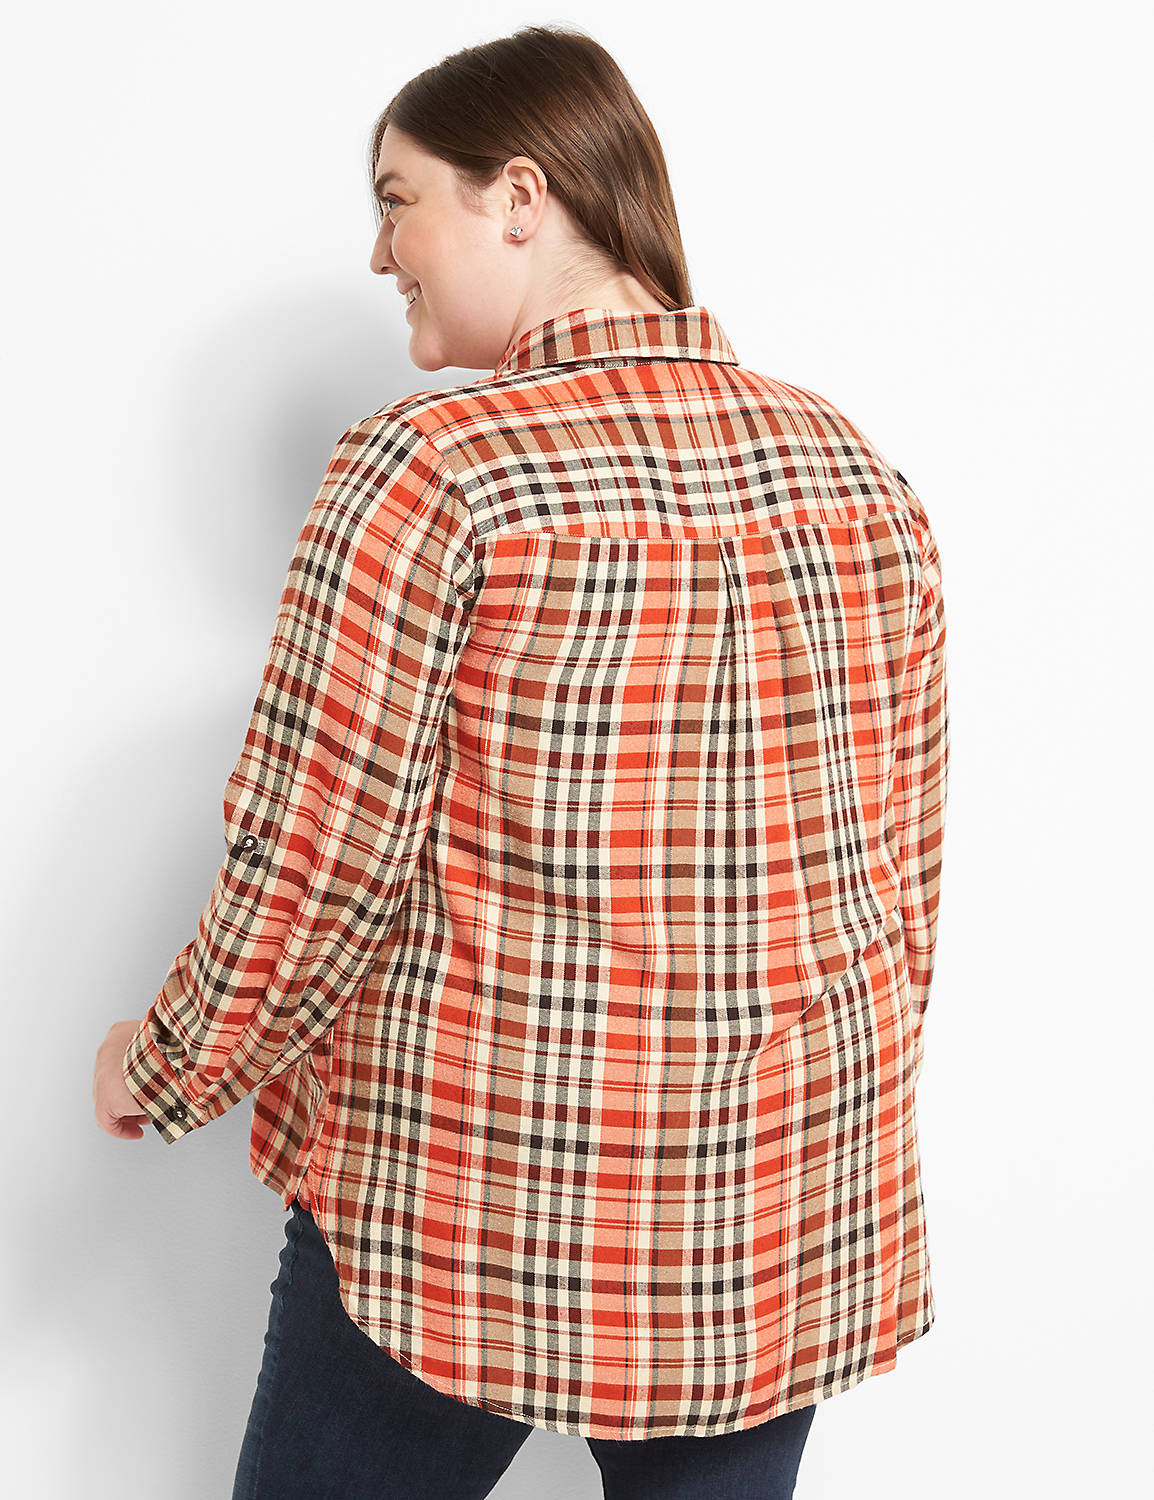 No-Peek Plaid Boyfriend Shirt Product Image 2